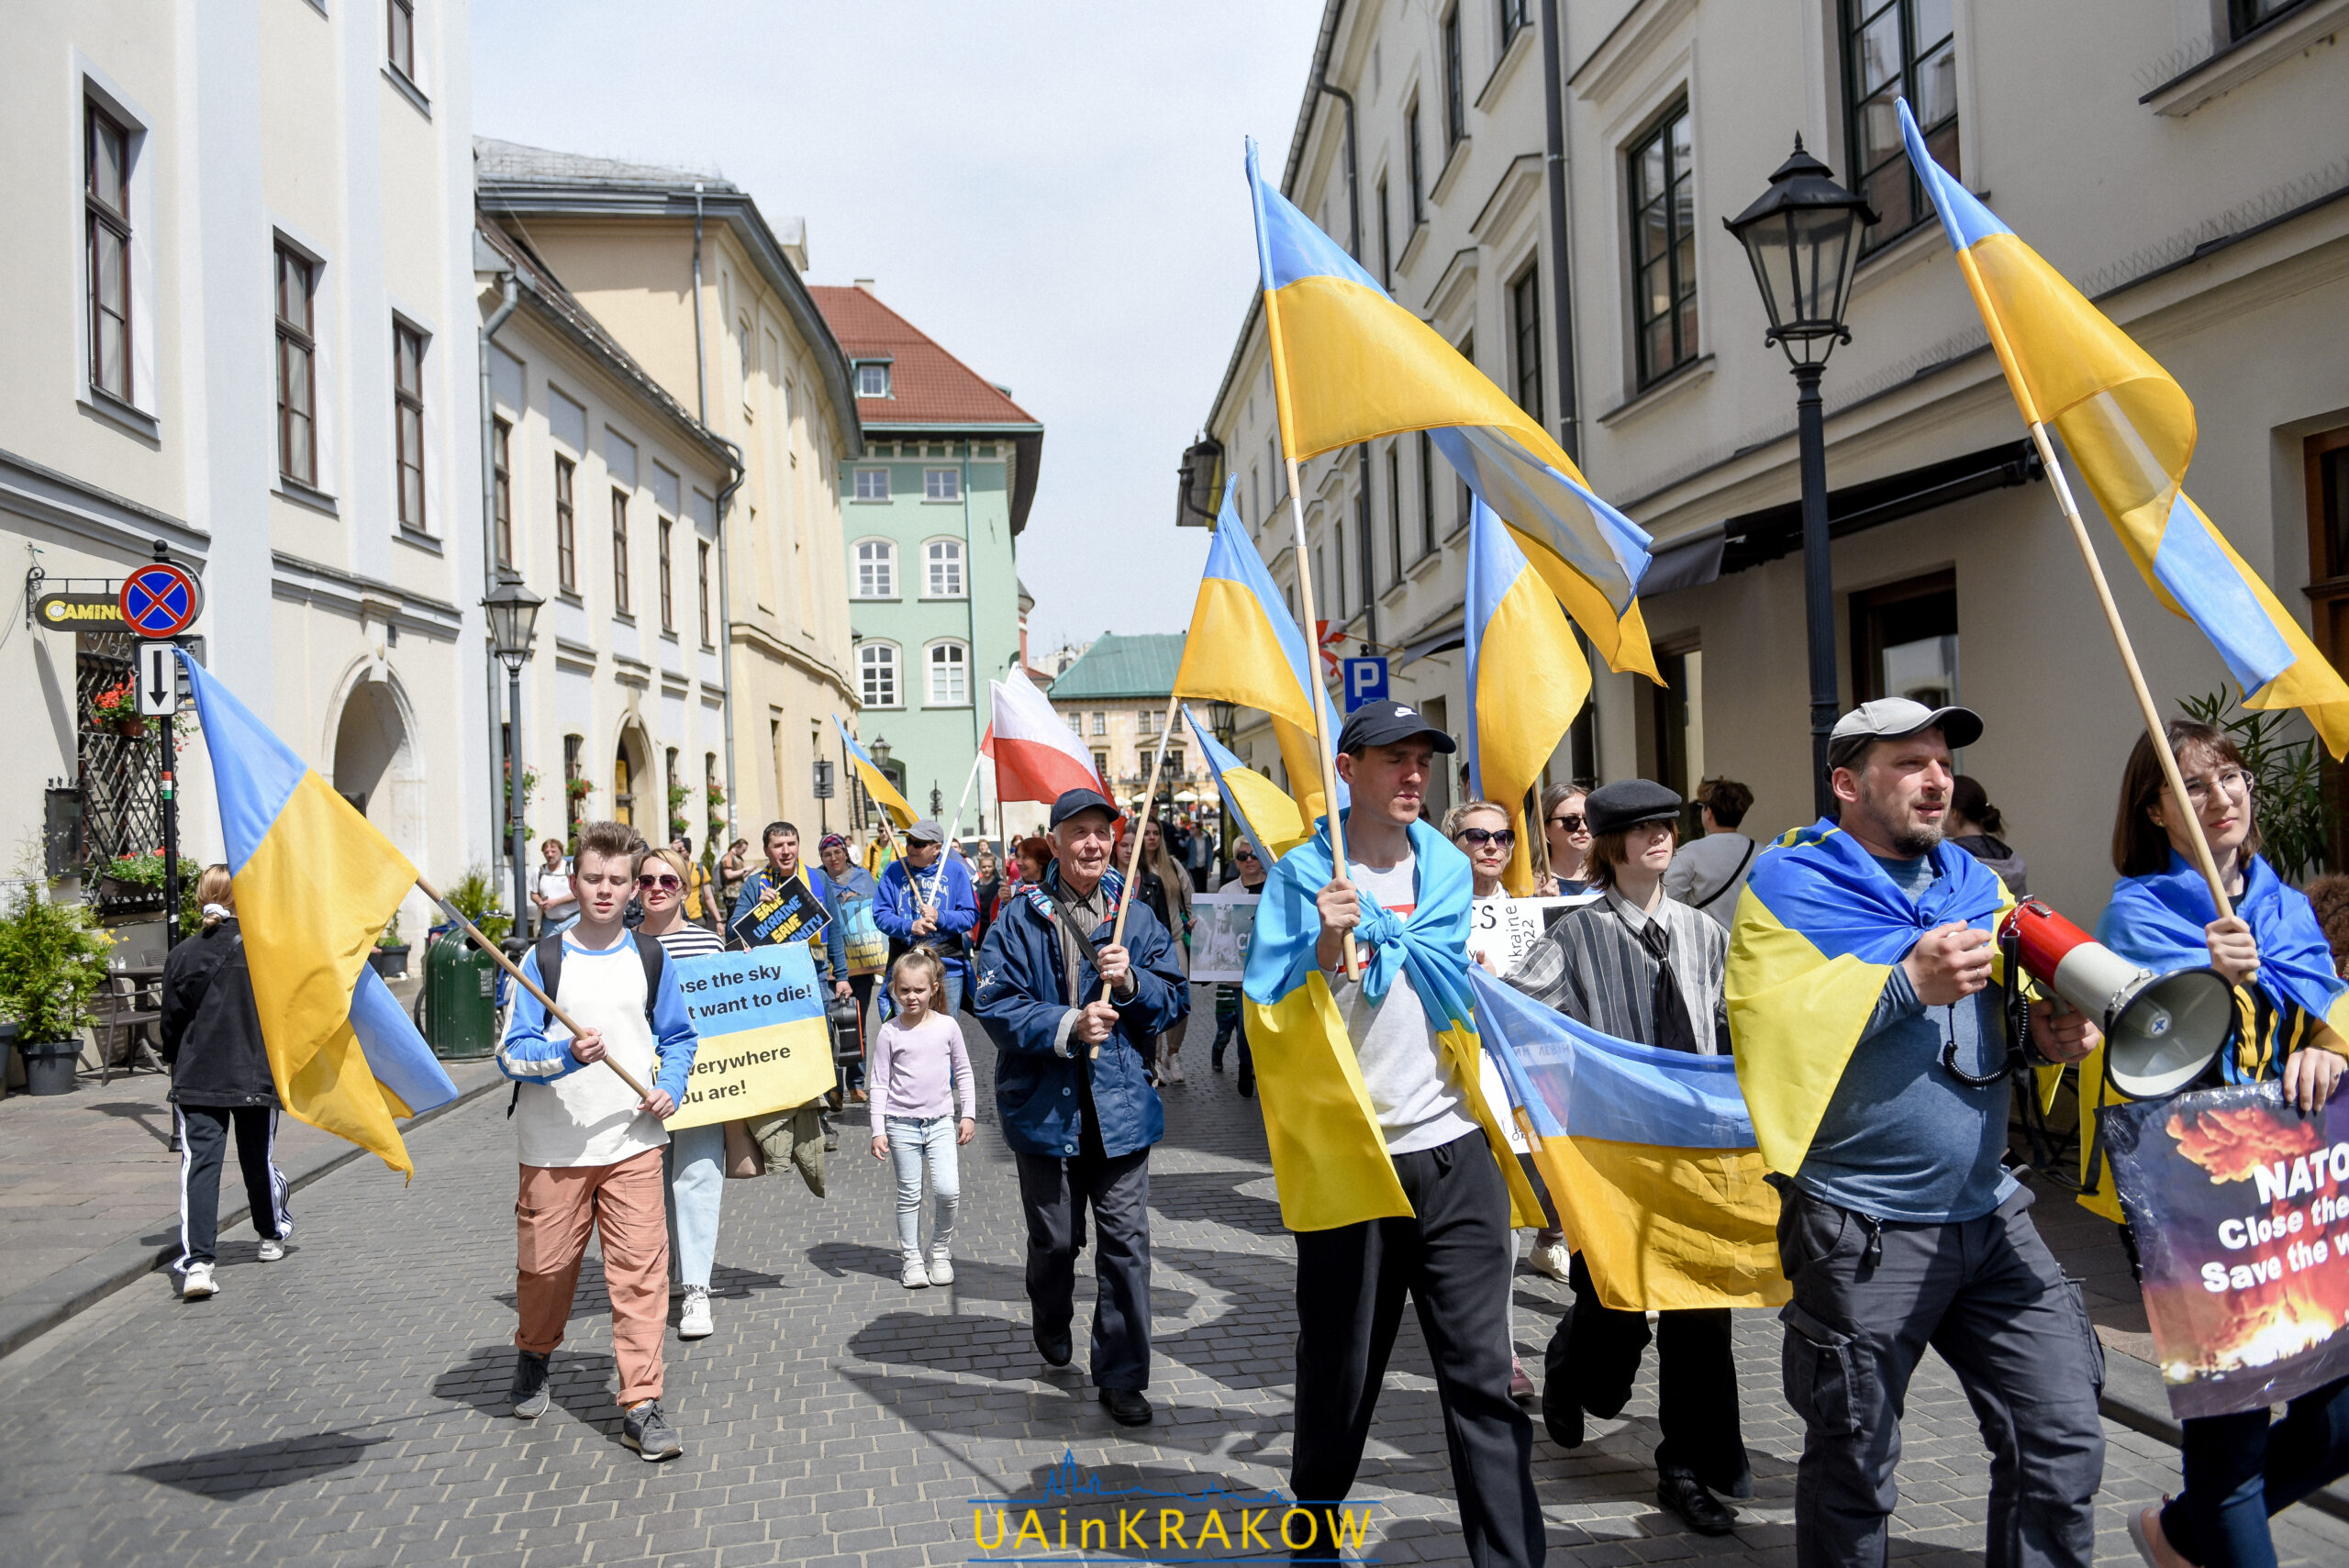 У Кракові відбувся мітинг на підтримку Маріуполя [ФОТО] dsc 1942 scaled